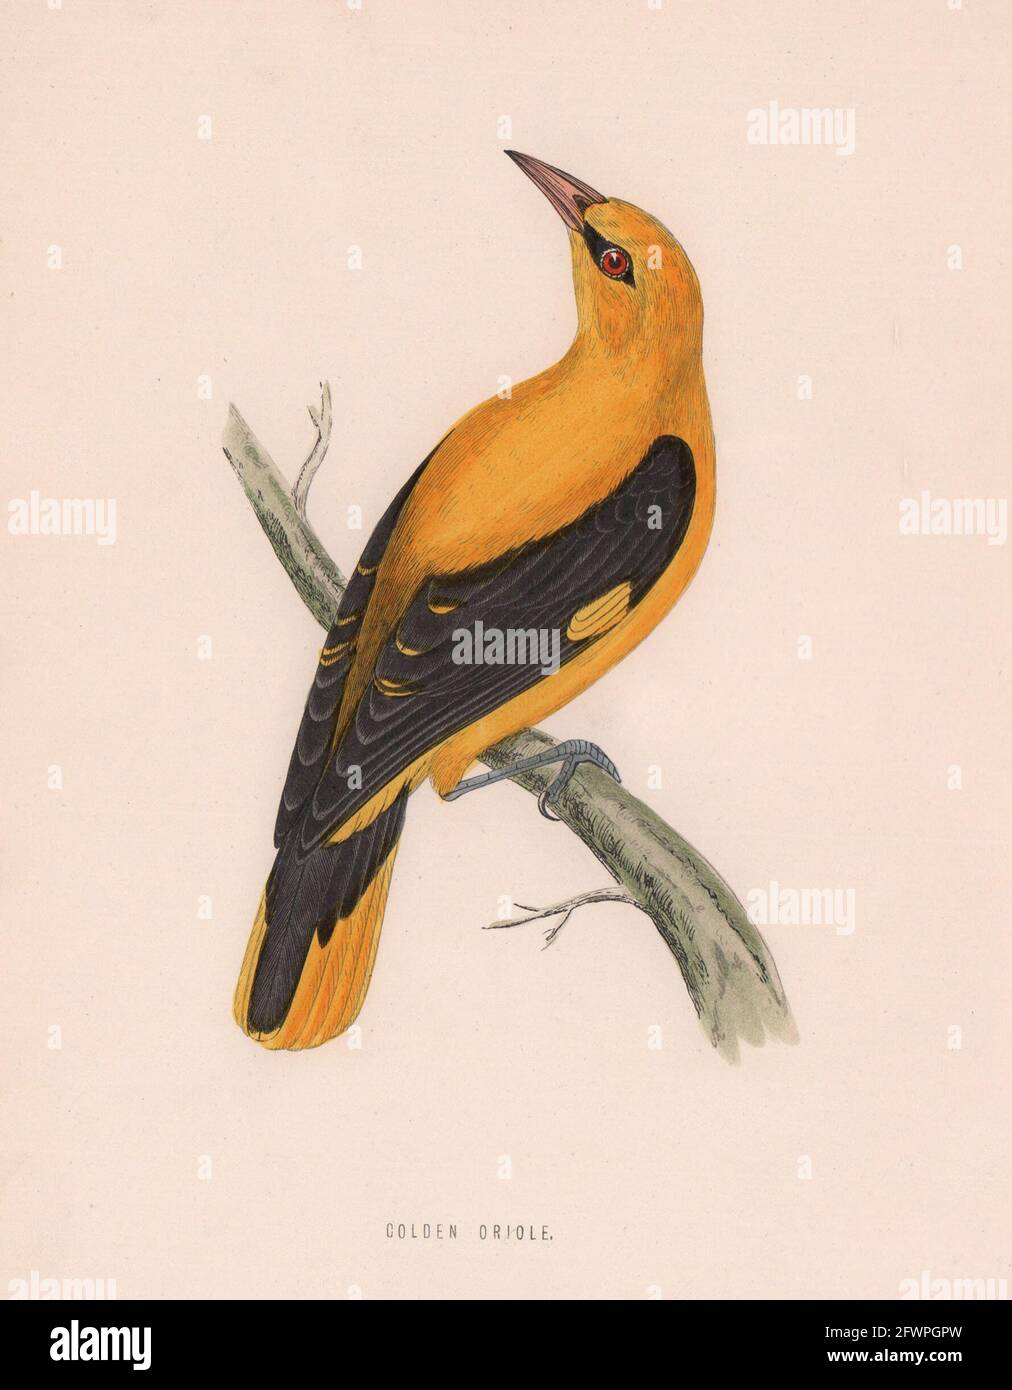 Oriole dorée. Morris's British Birds. Impression couleur antique 1870 Banque D'Images